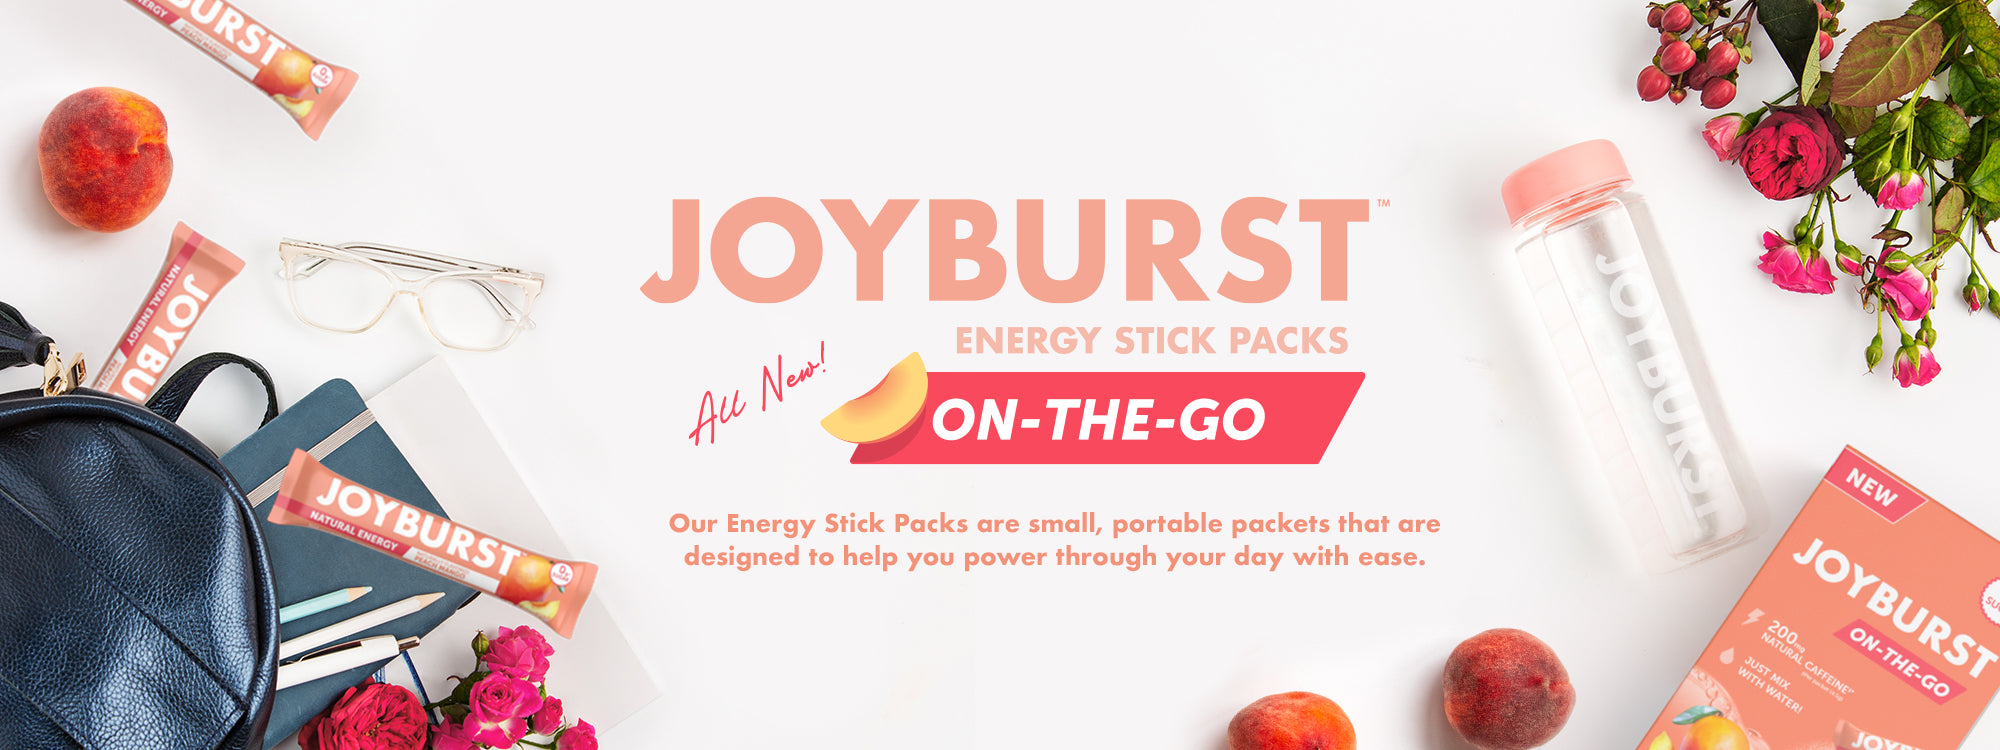 Joyburst Energy Sticks